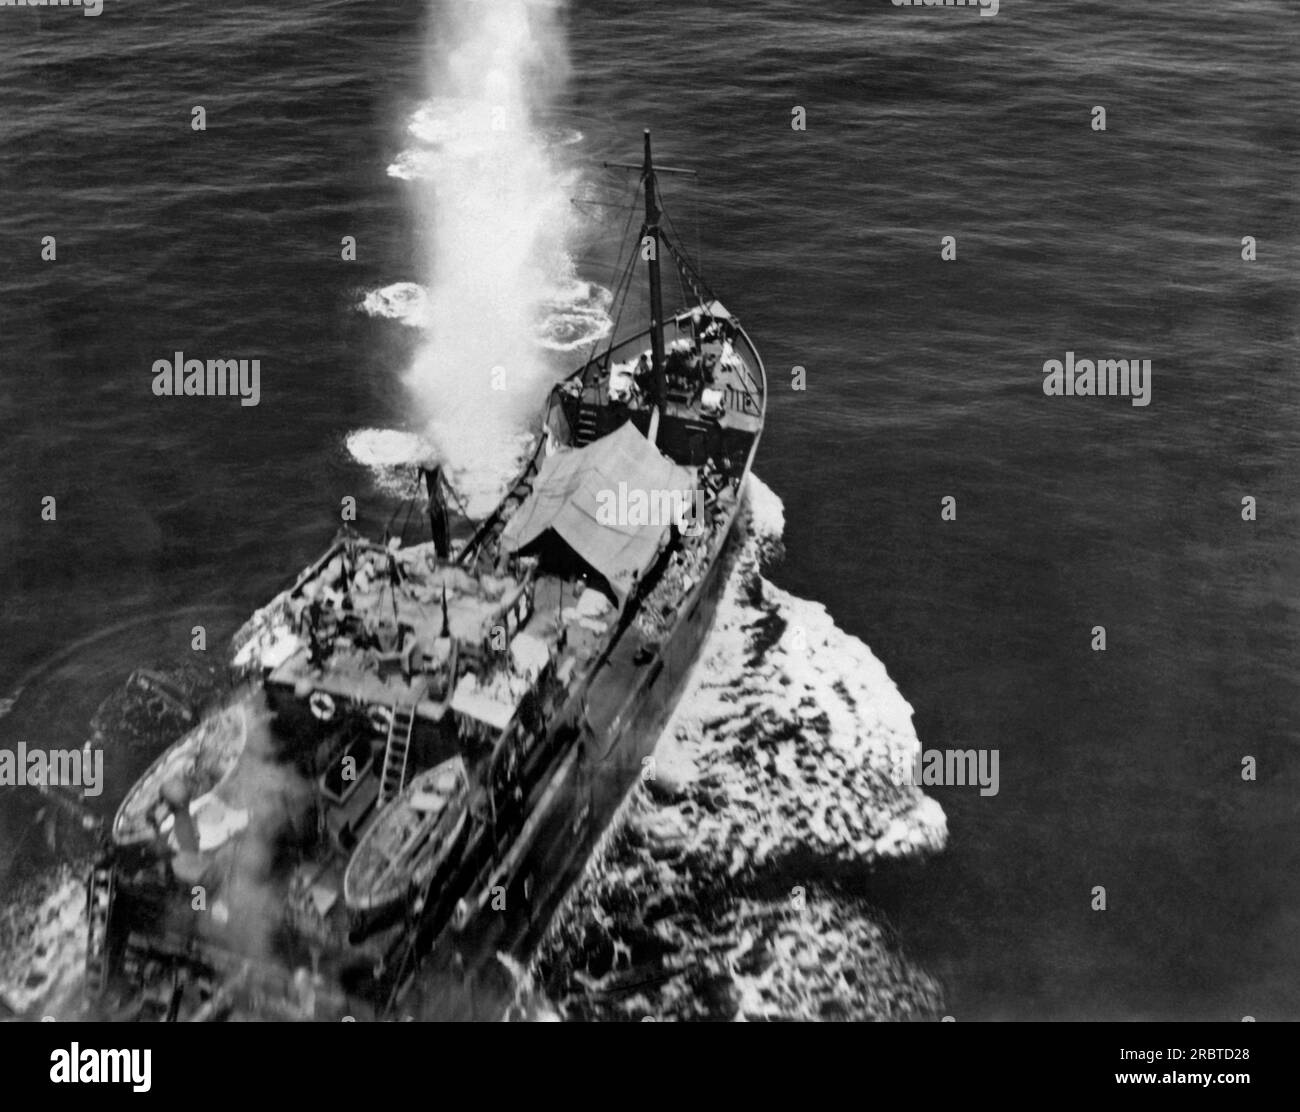 Oceano Pacifico, 10 novembre 1943 Un cargo giapponese nel Pacifico sudoccidentale attaccato e infine affondato da un bombardiere dell'esercito statunitense. Foto Stock